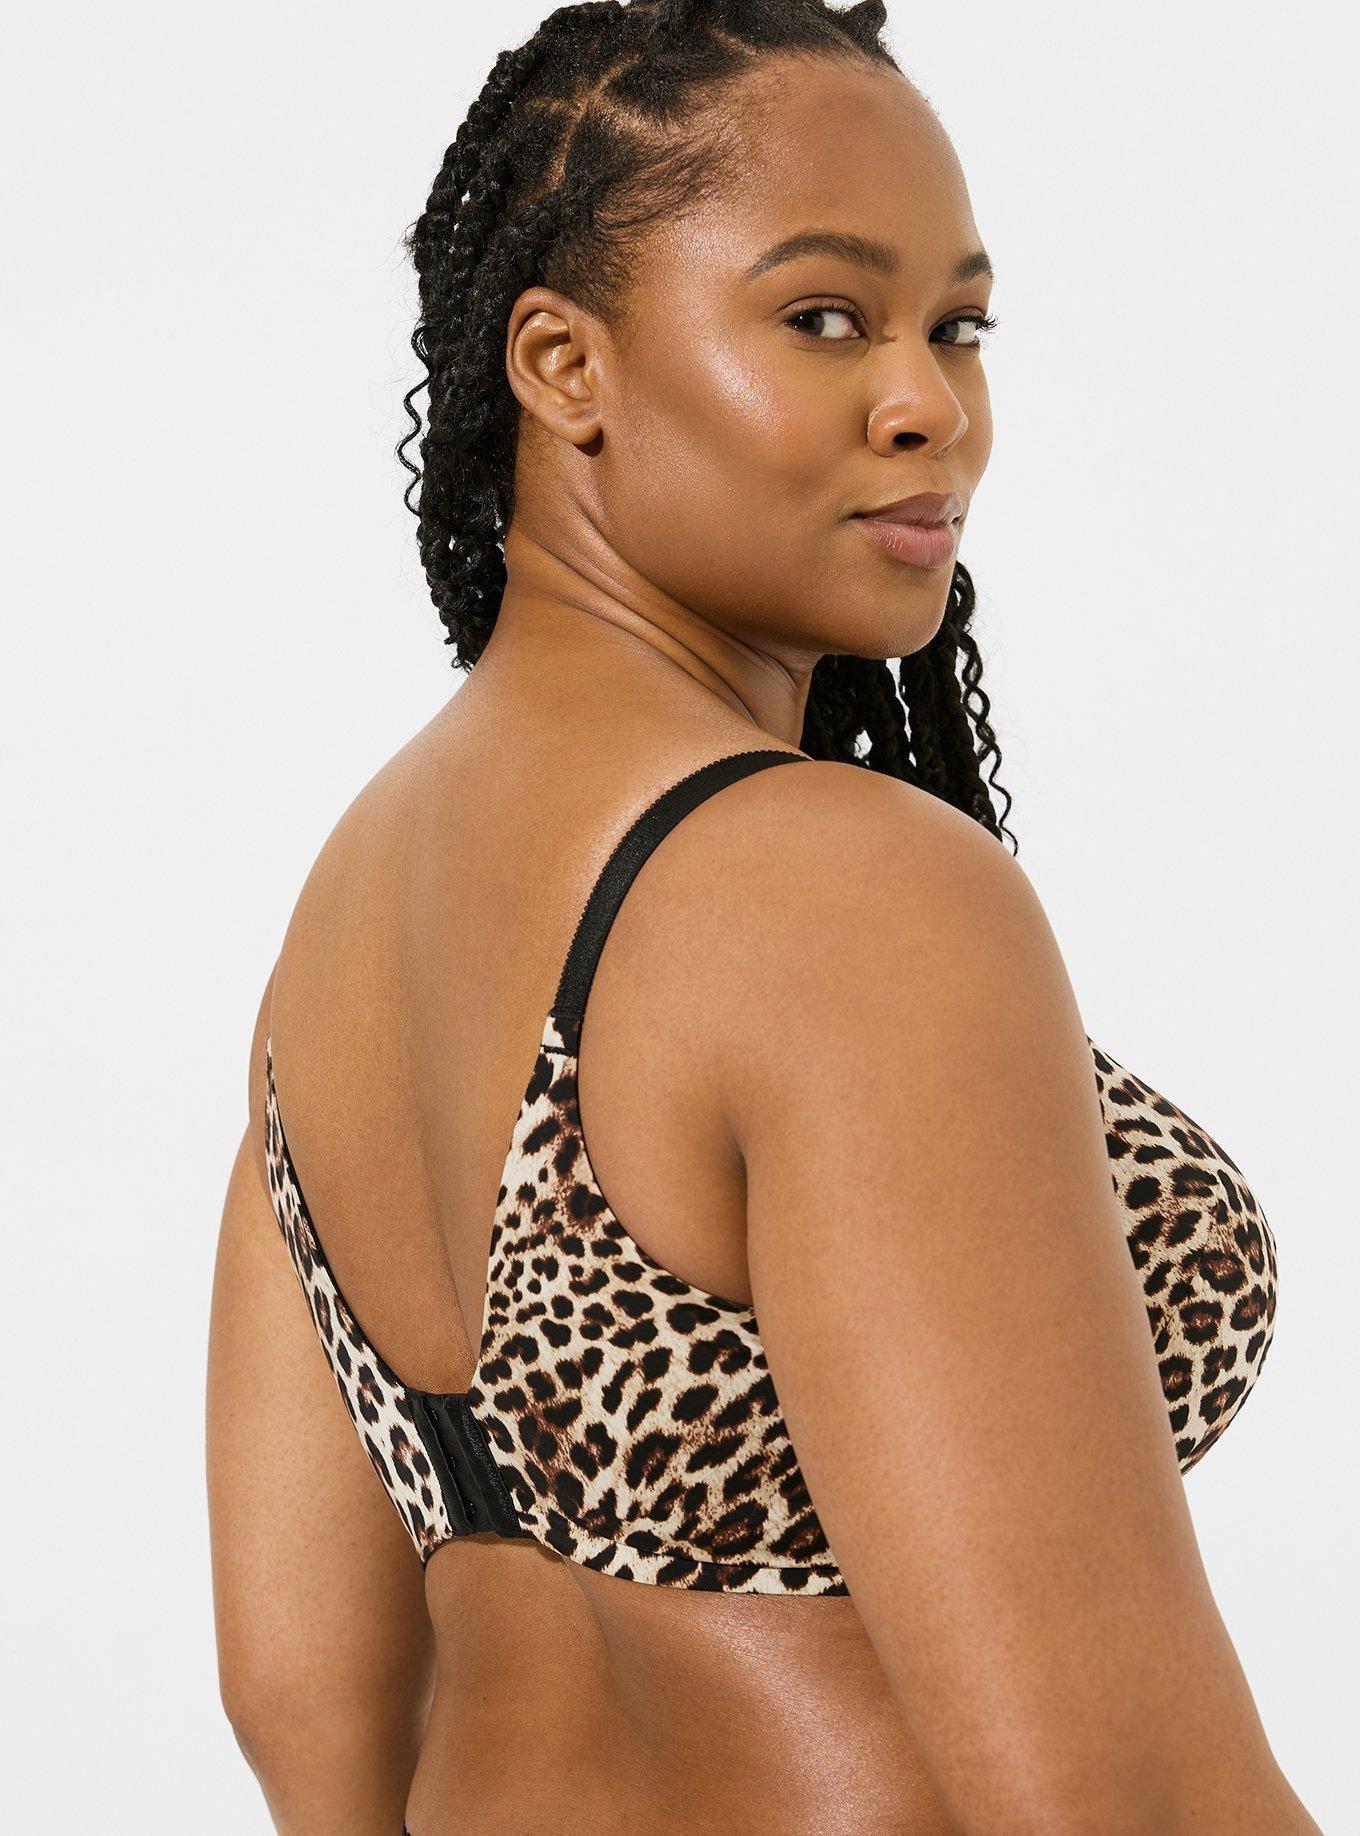 Find more 40dd Victoria Secret Perfect Coverage Leopard Bra for